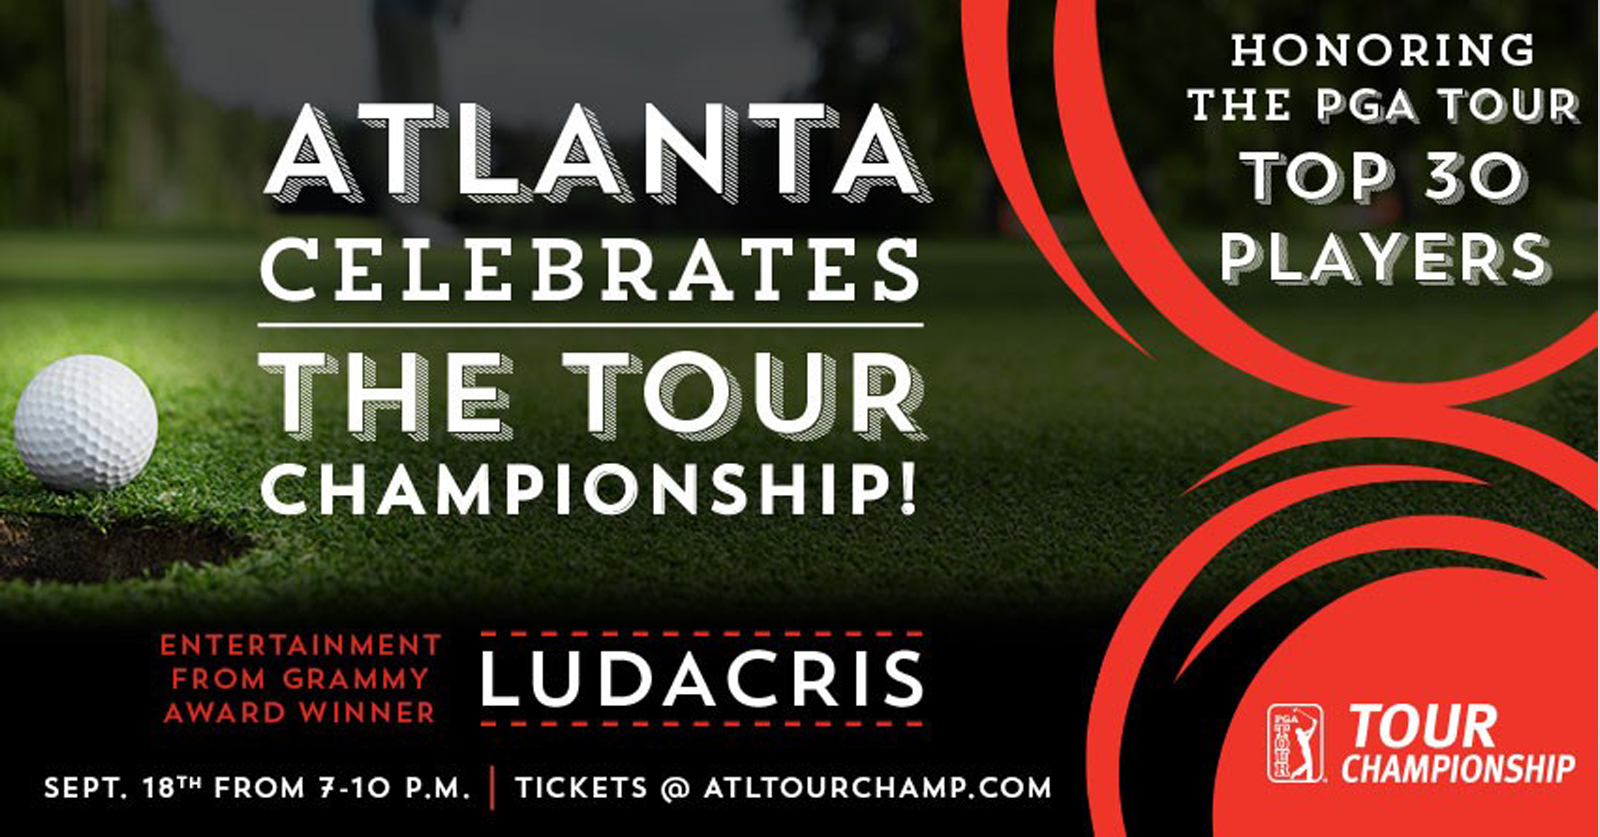 Atlanta Celebrates the TOUR Championship with Ludacris, a three-time Grammy award-winner. Image